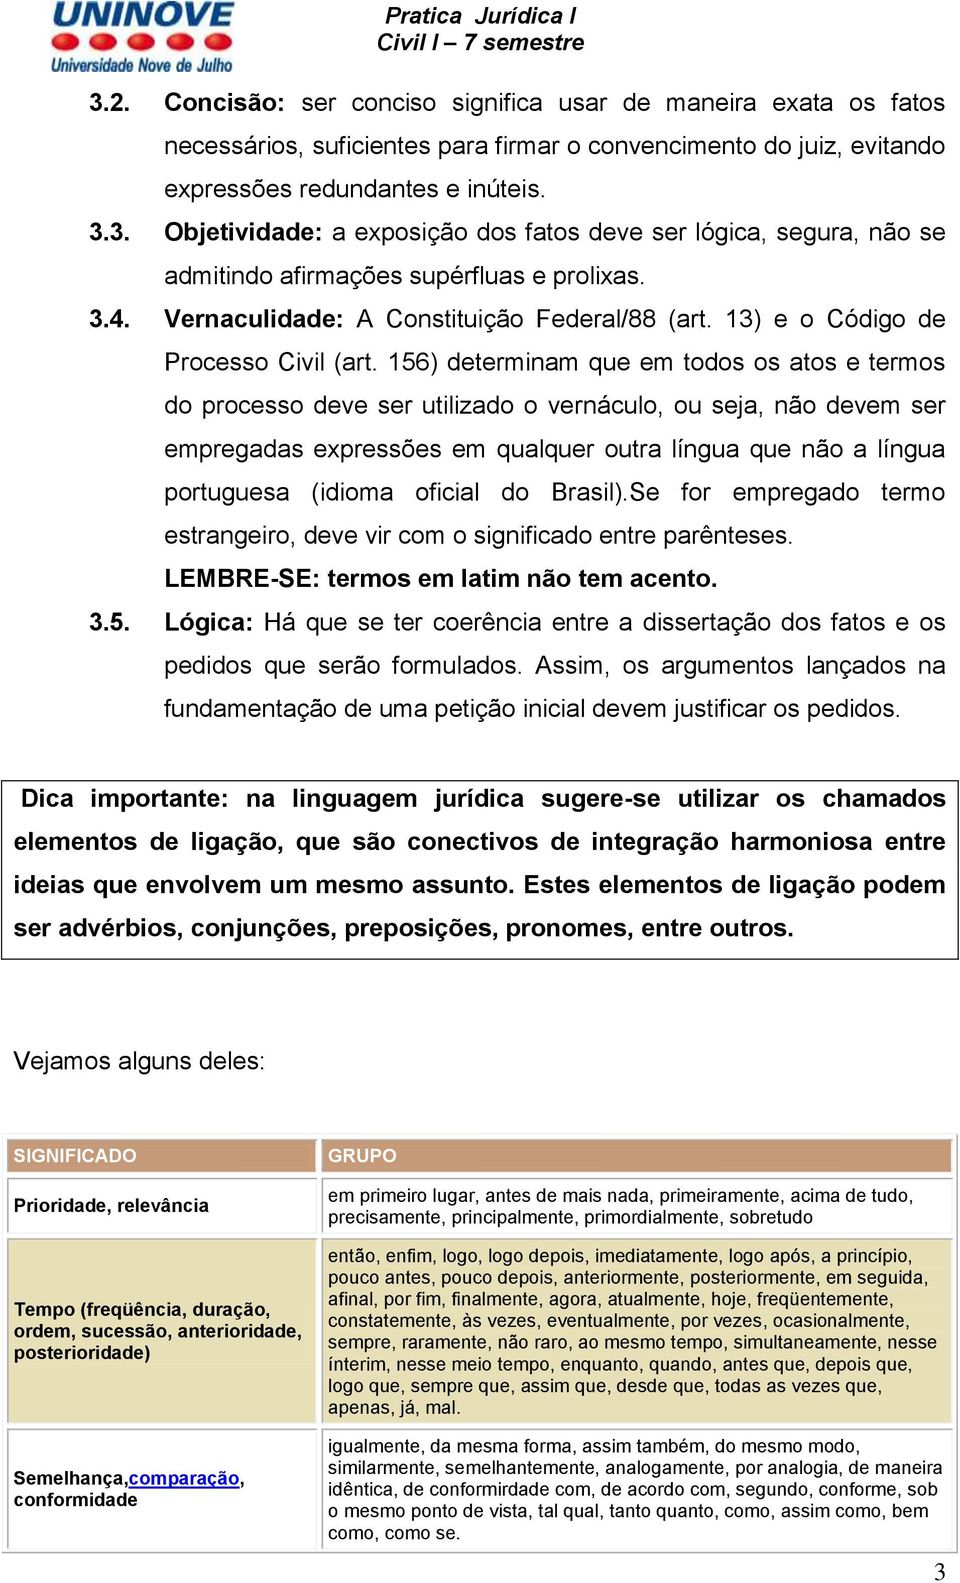 156) determinam que em todos os atos e termos do processo deve ser utilizado o vernáculo, ou seja, não devem ser empregadas expressões em qualquer outra língua que não a língua portuguesa (idioma